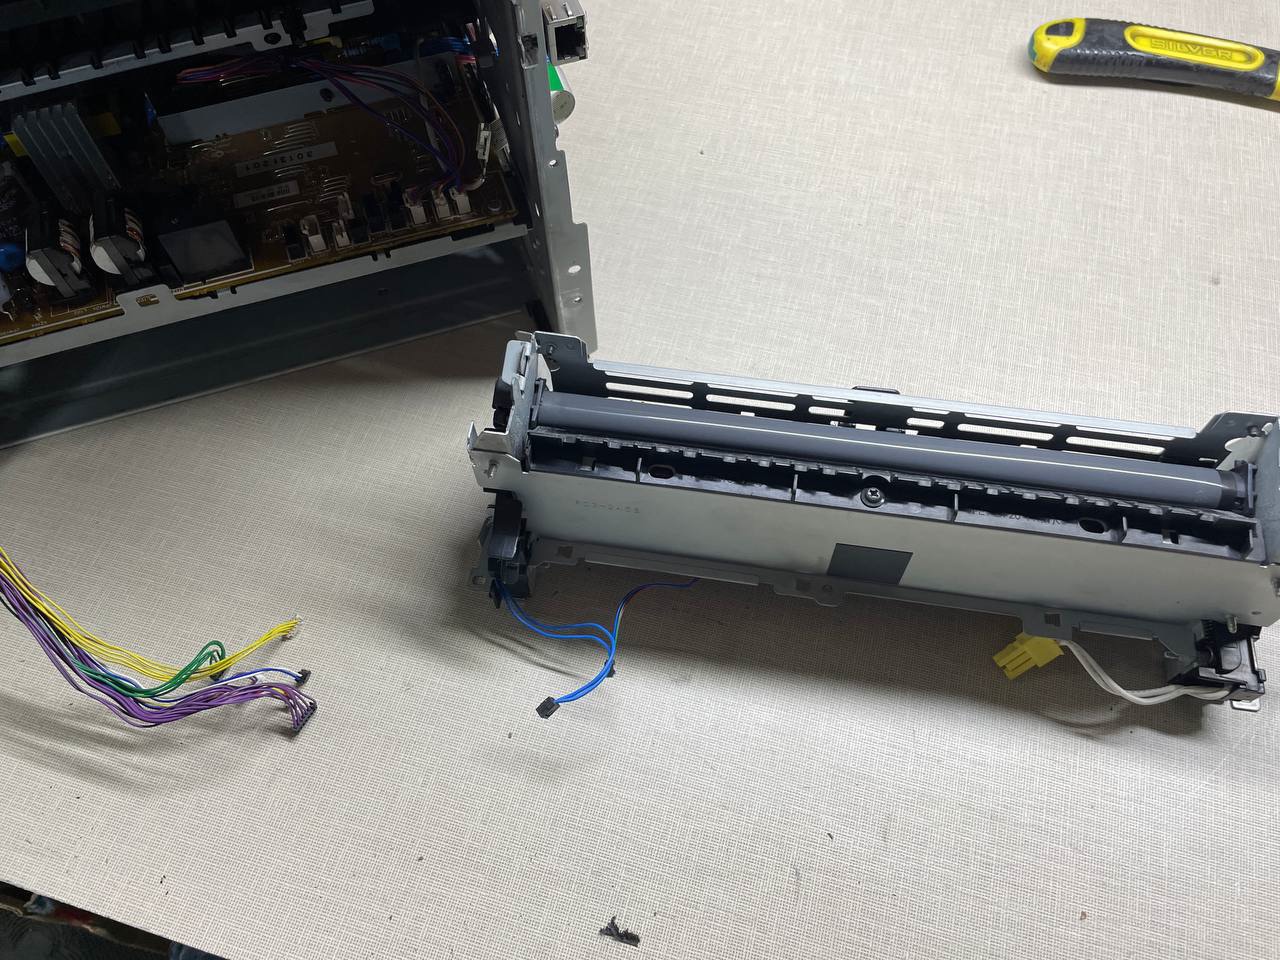 Ремонт принтера HP LaserJet Pro 400 m401n